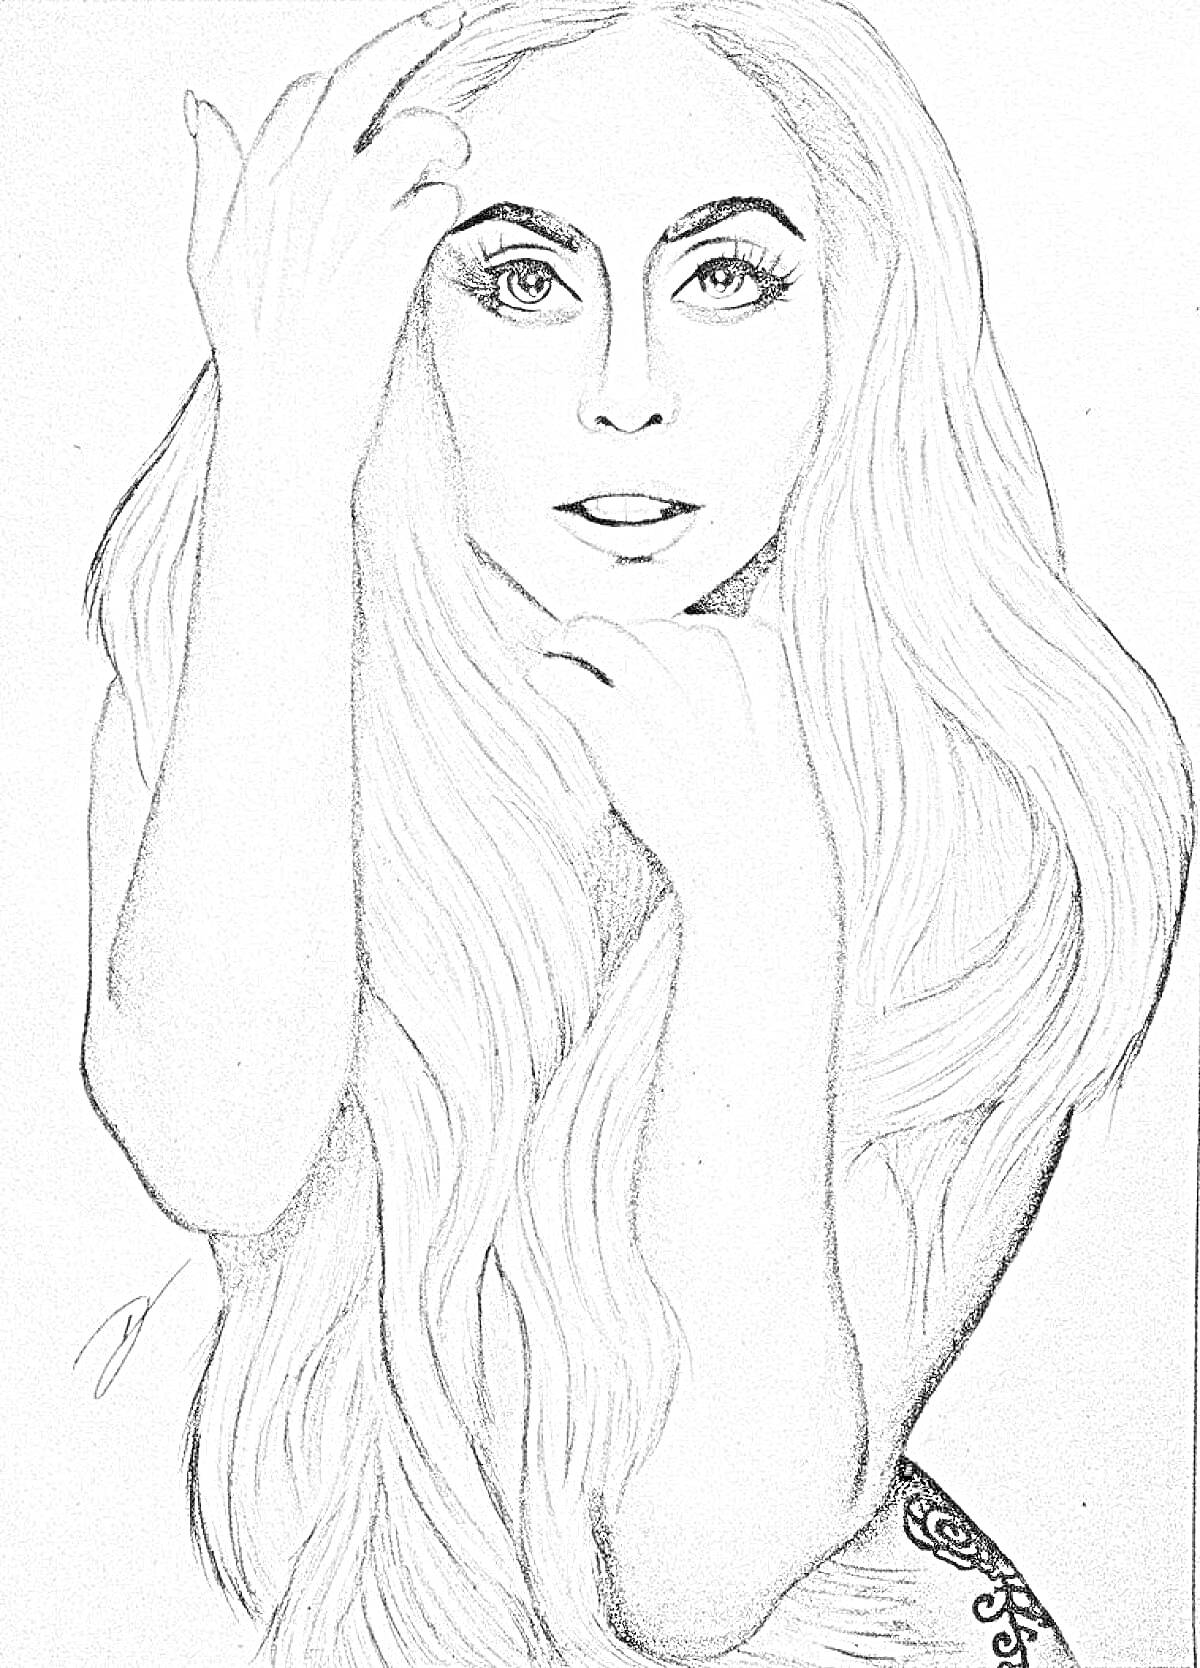 Раскраска Портрет женщины с длинными распущенными волосами в черно-белой технике